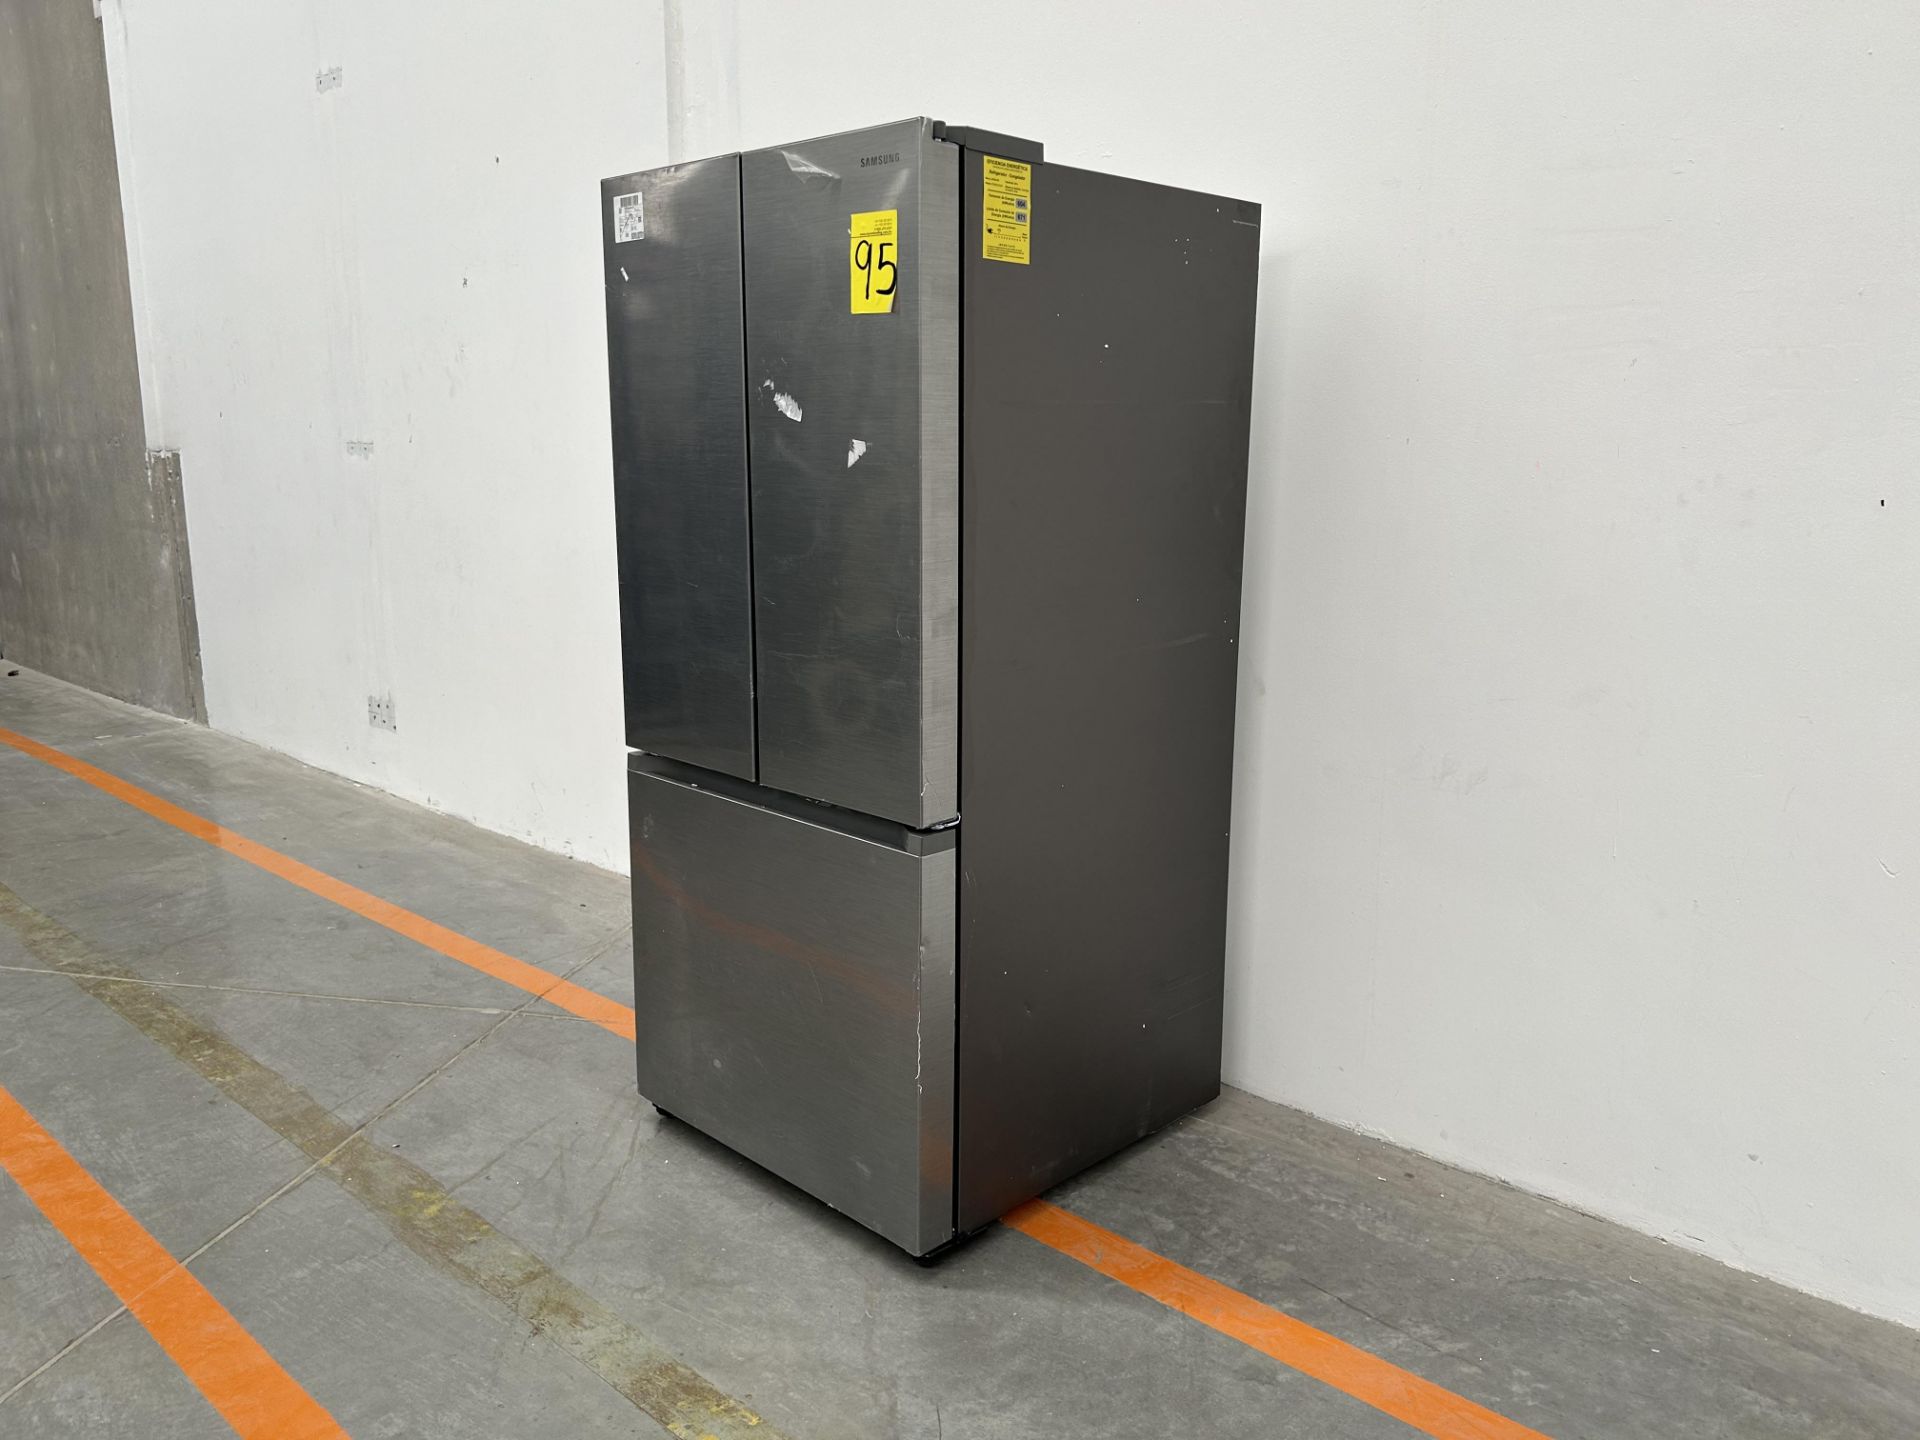 (NUEVO) Refrigerador Marca SAMSUNG, Modelo RF25C5151S9, Serie 00359T, Color GRIS - Image 2 of 4